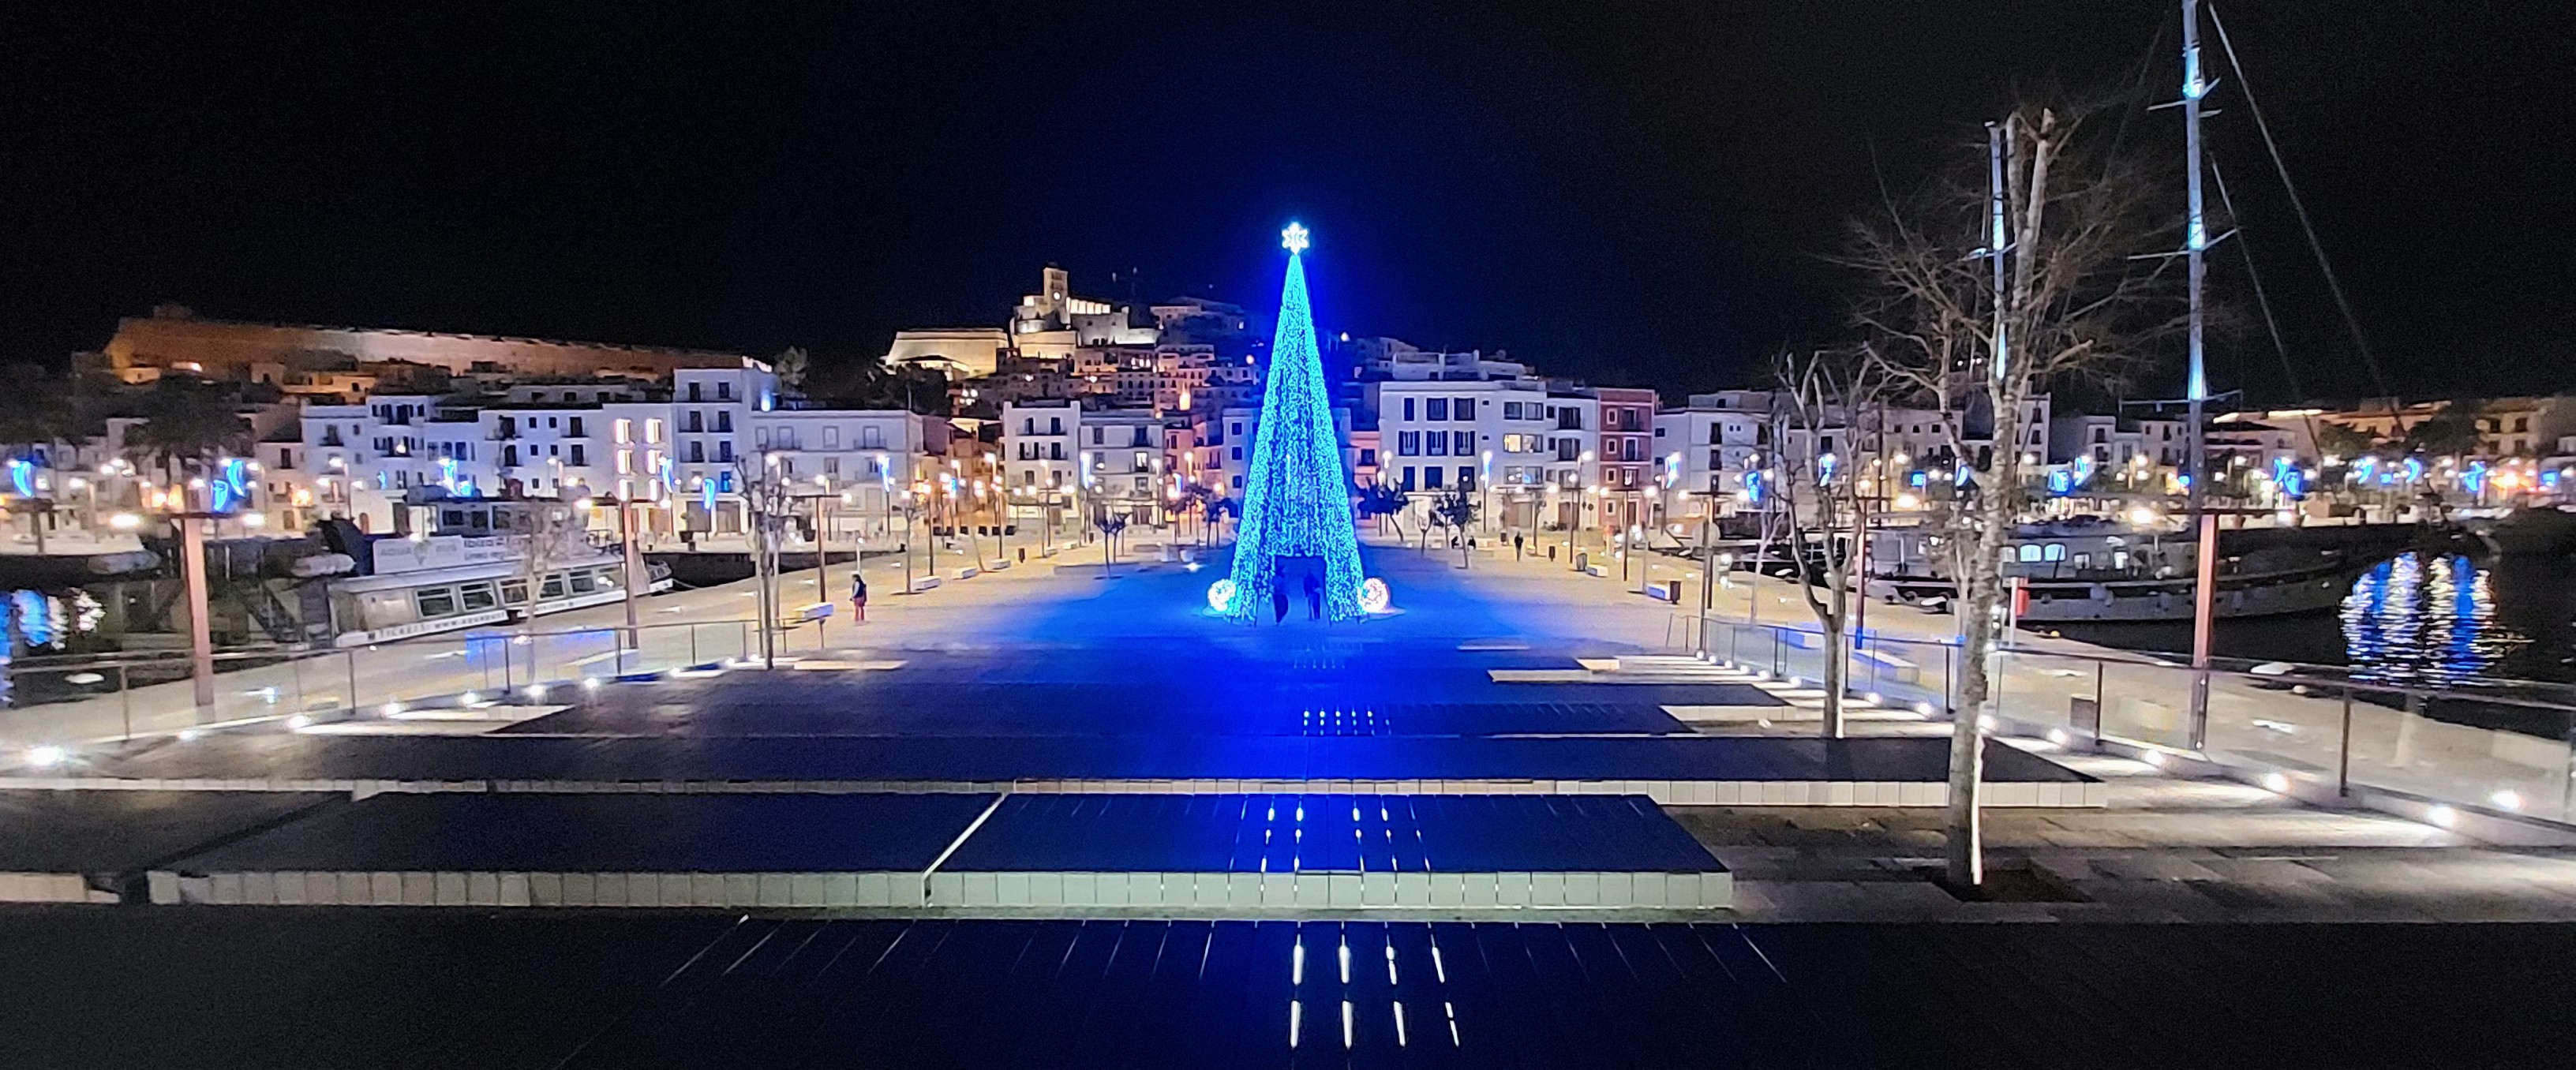  L'Autoritat Portuària de Balears organitza el primer concurs d'il·luminació nadalenca als ports d'Eivissa i la Savina